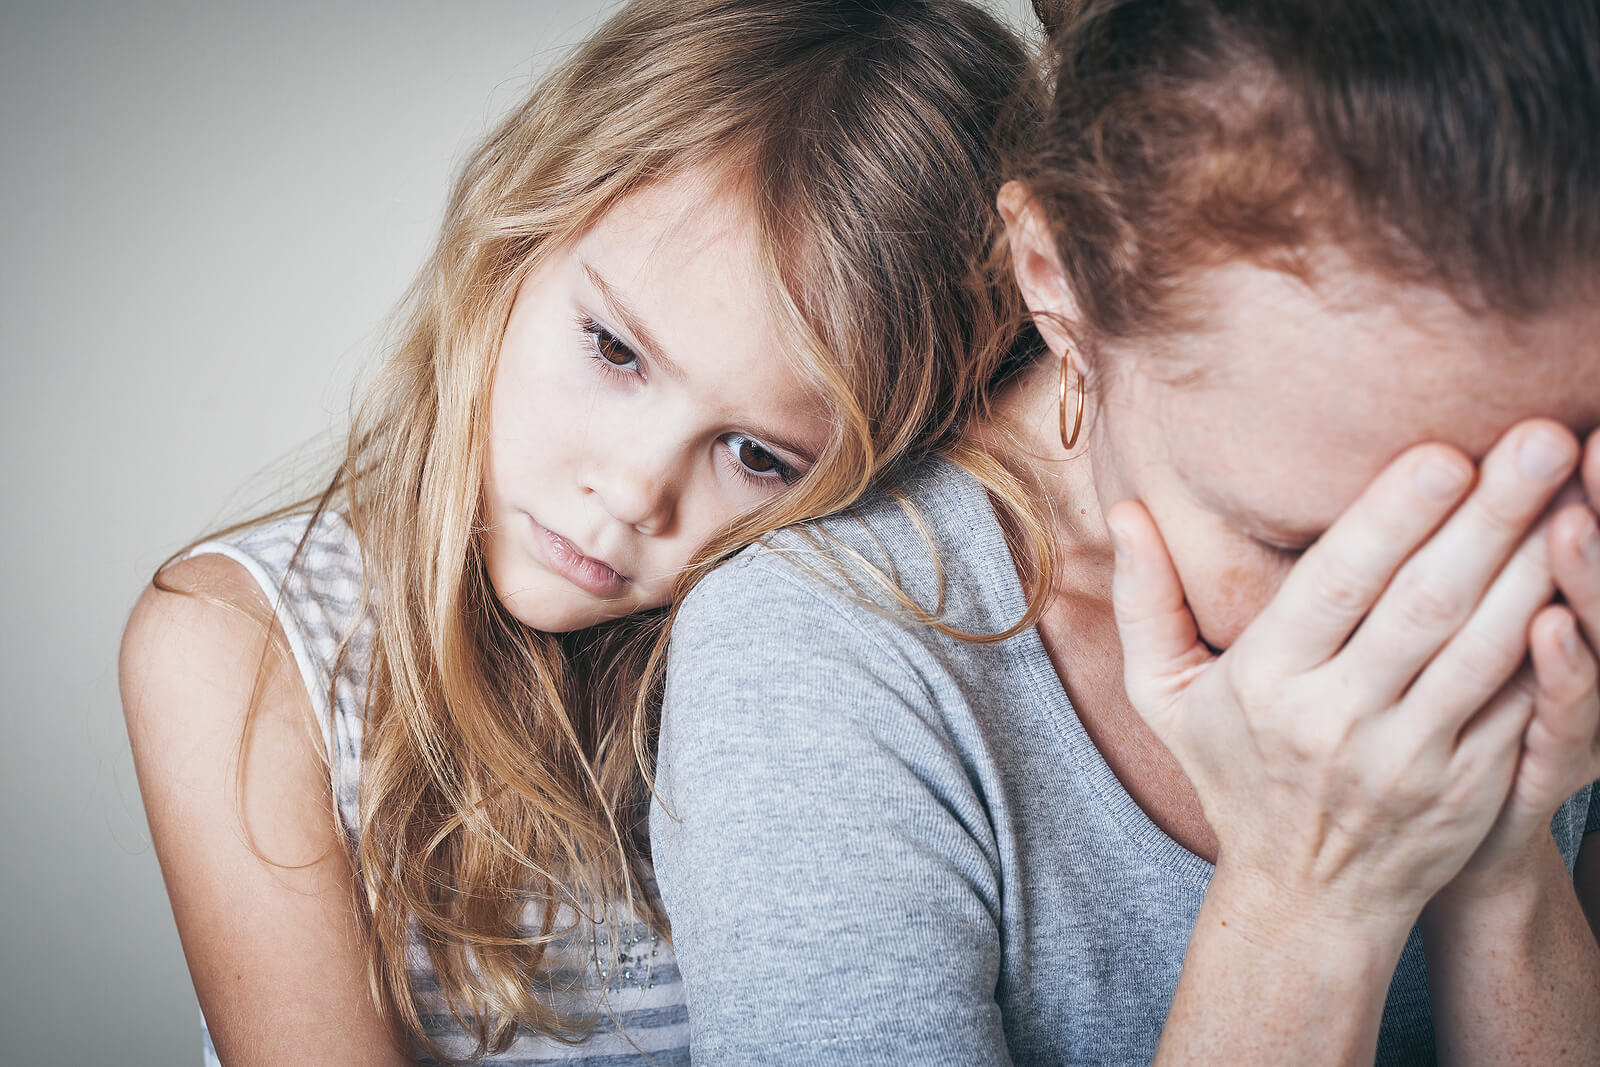 Hija apoya en el hombro de su madre para darle apoyo mientras sufre un ataque de ansiedad.